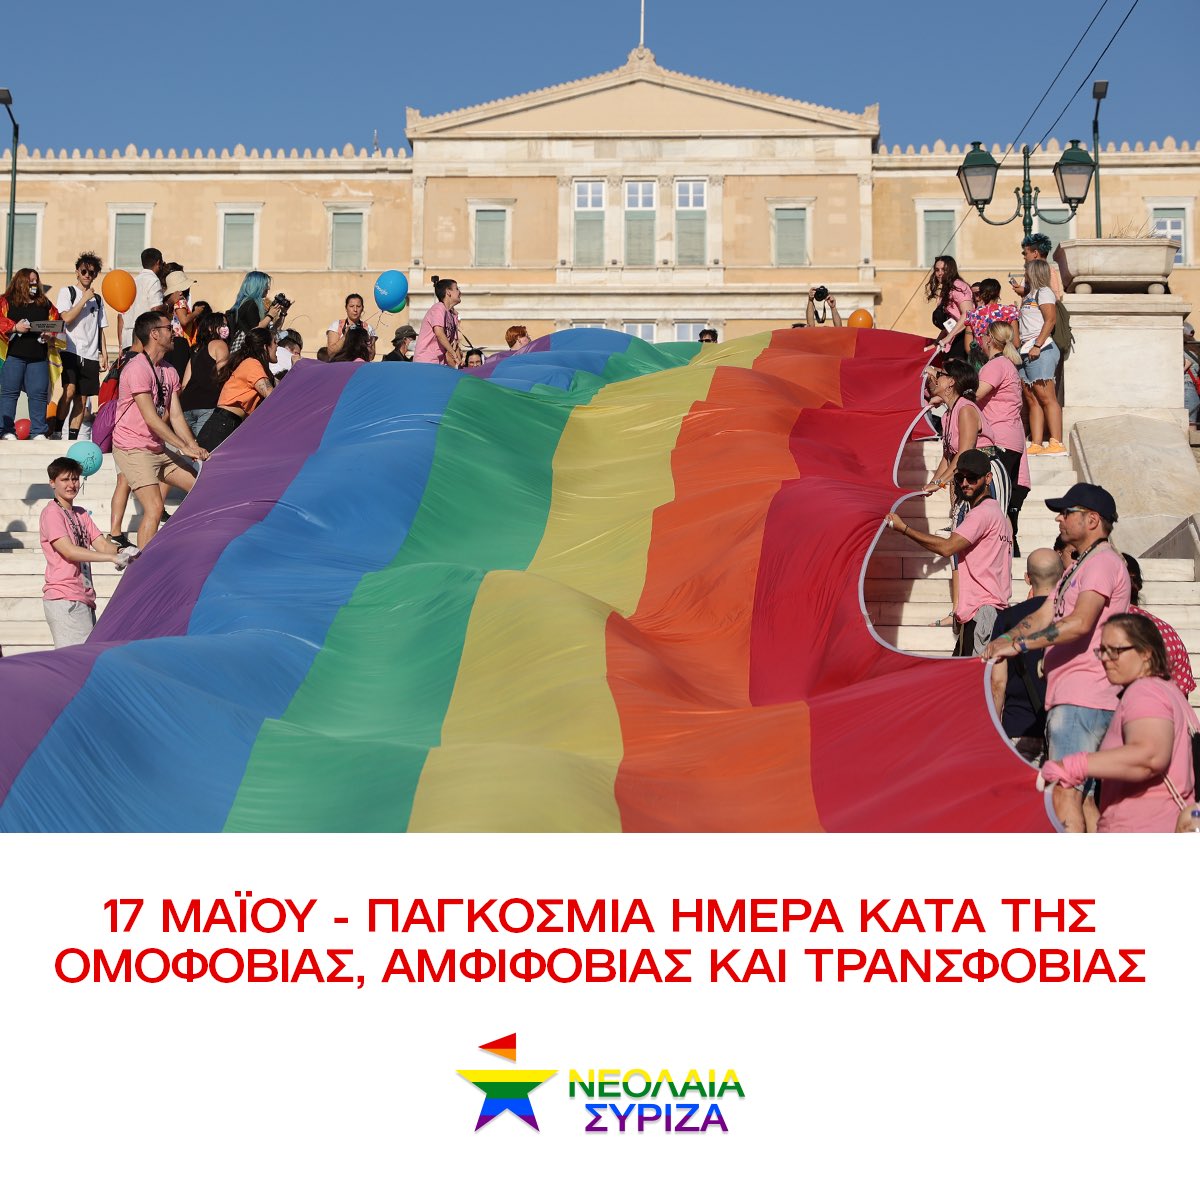 🌈 17 Μαΐου-Παγκόσμια Ημέρα κατά της ομοφοβίας, αμφιφοβίας, τρανσφοβίας Τα ΛΟΑΤΙ άτομα εξακολουθούν να στοχοποιούνται και να υφίστανται βία, διακρίσεις και στιγματισμό, παντού. Στόχος μας πρέπει να είναι, σταθερά, να φτιάξουμε έναν κόσμο ισότητας και πραγματικής ελευθερίας!